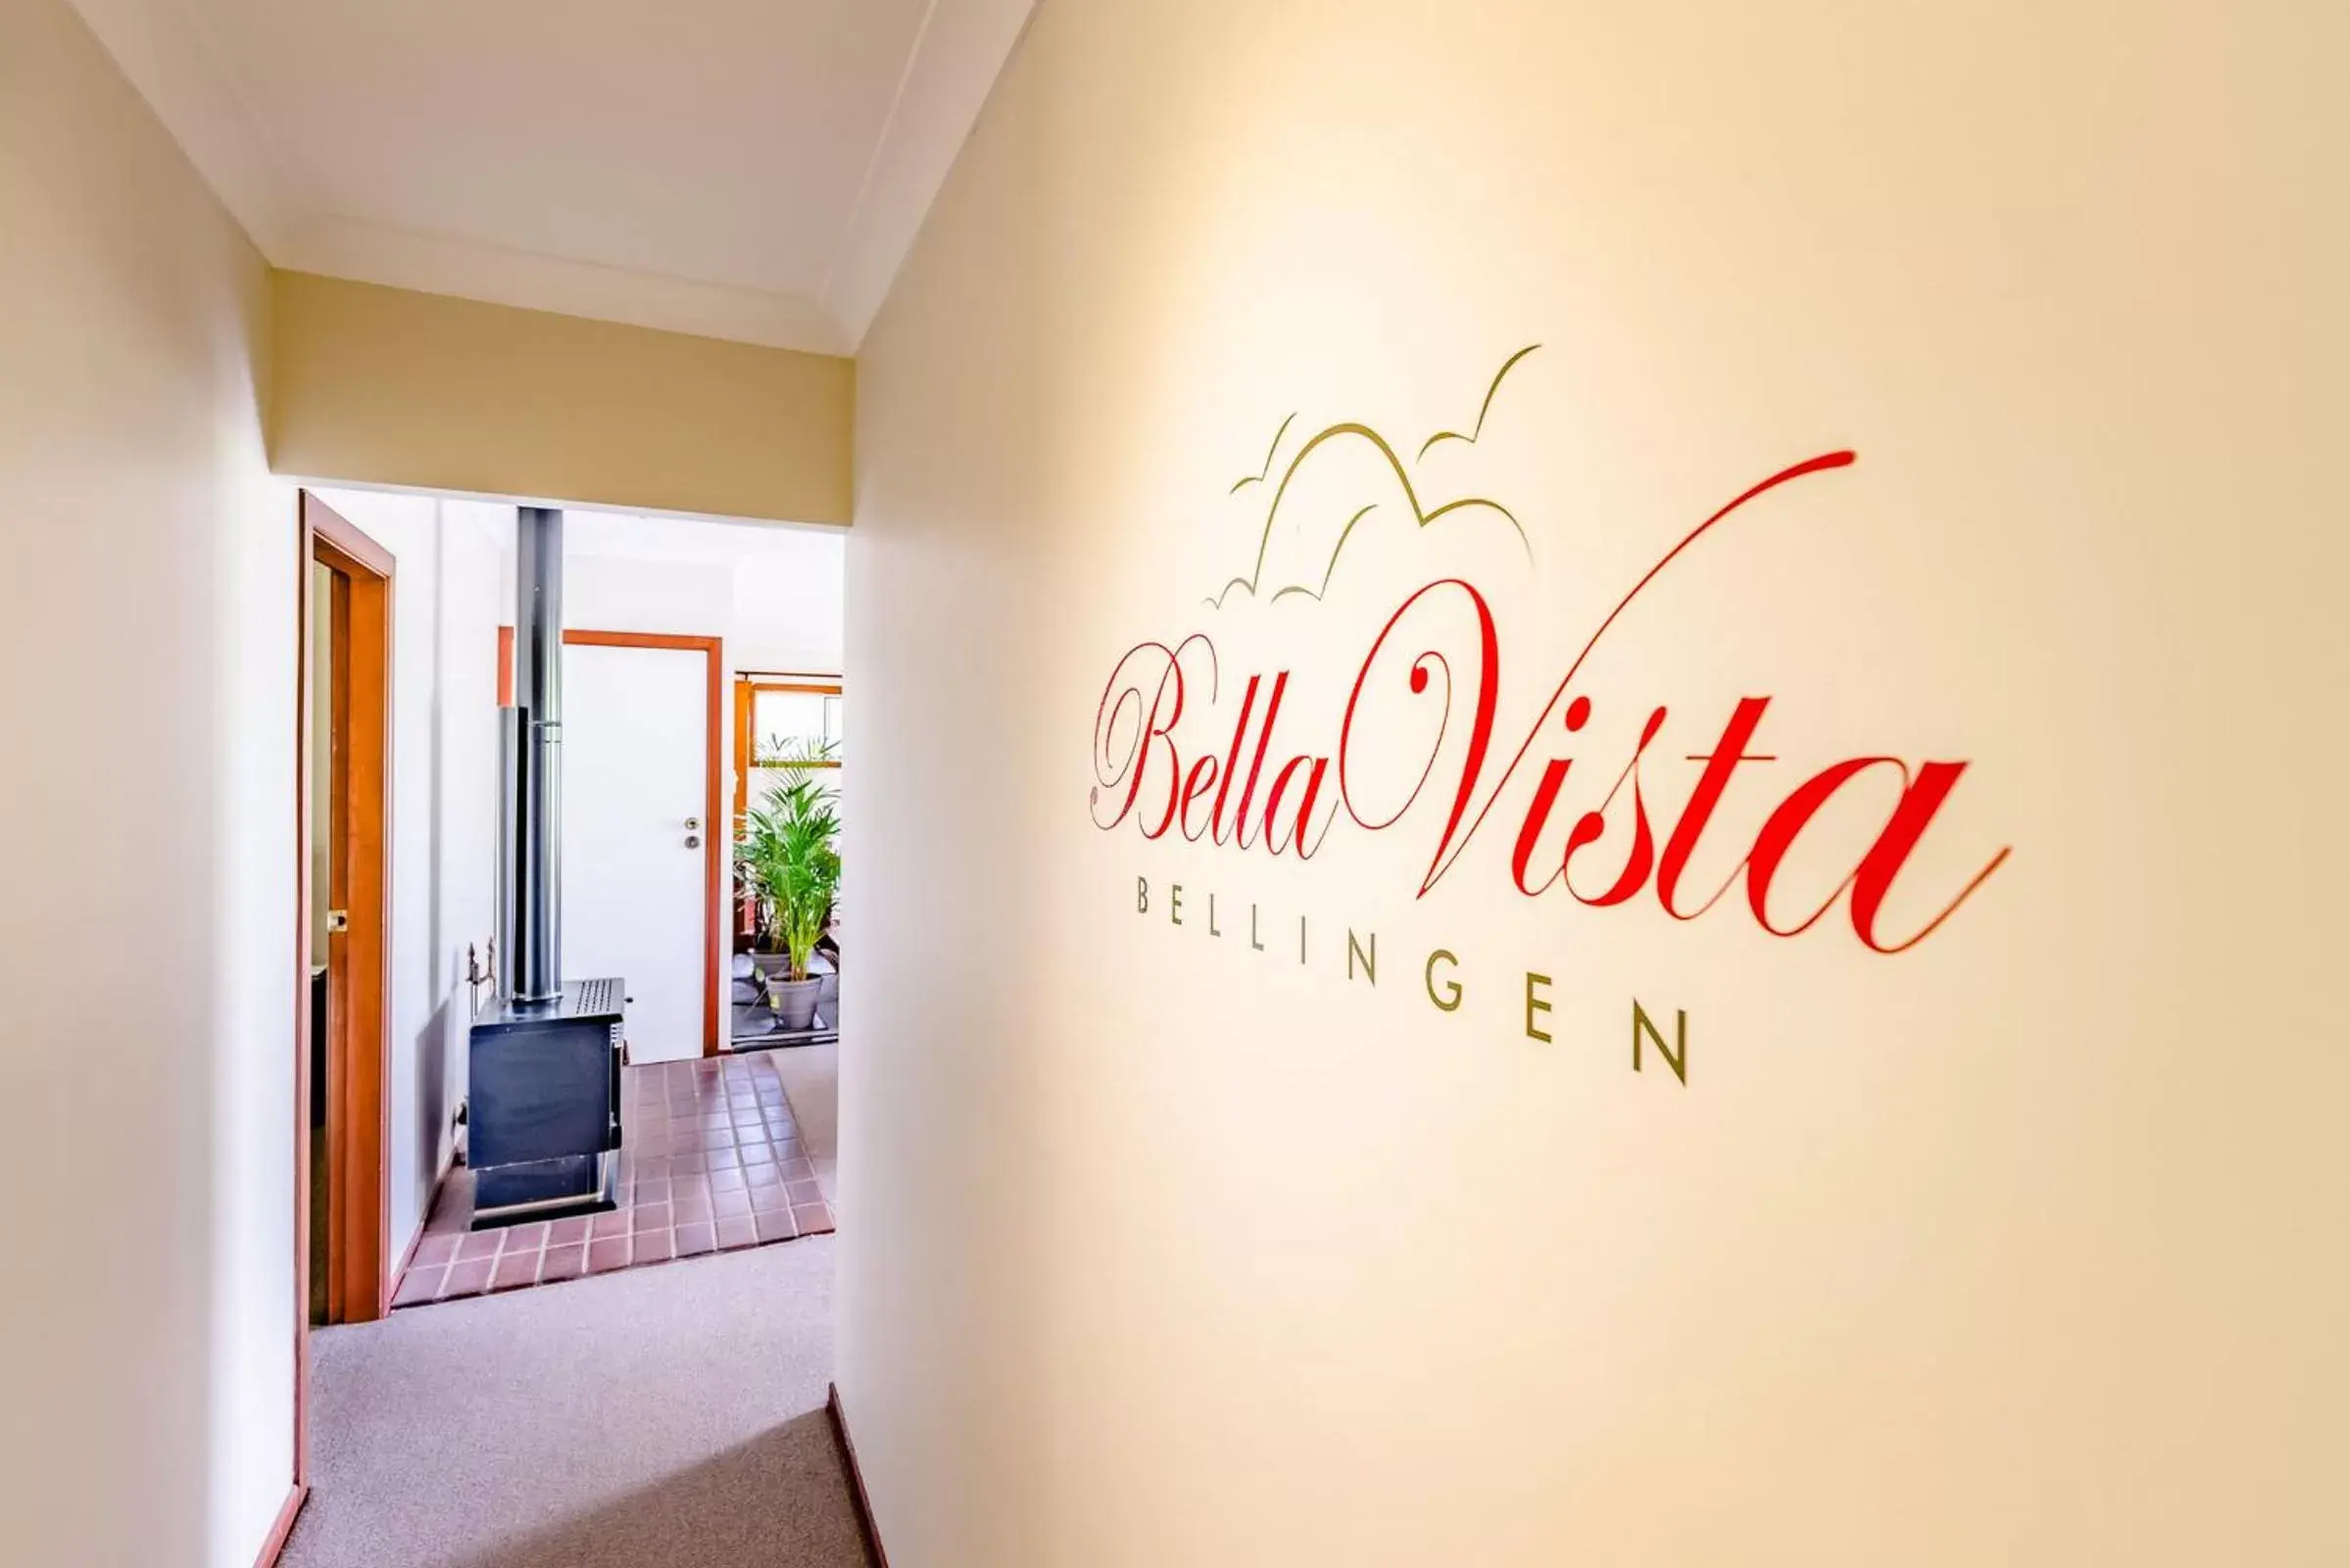 Day, Property Logo/Sign in Bella Vista Bellingen